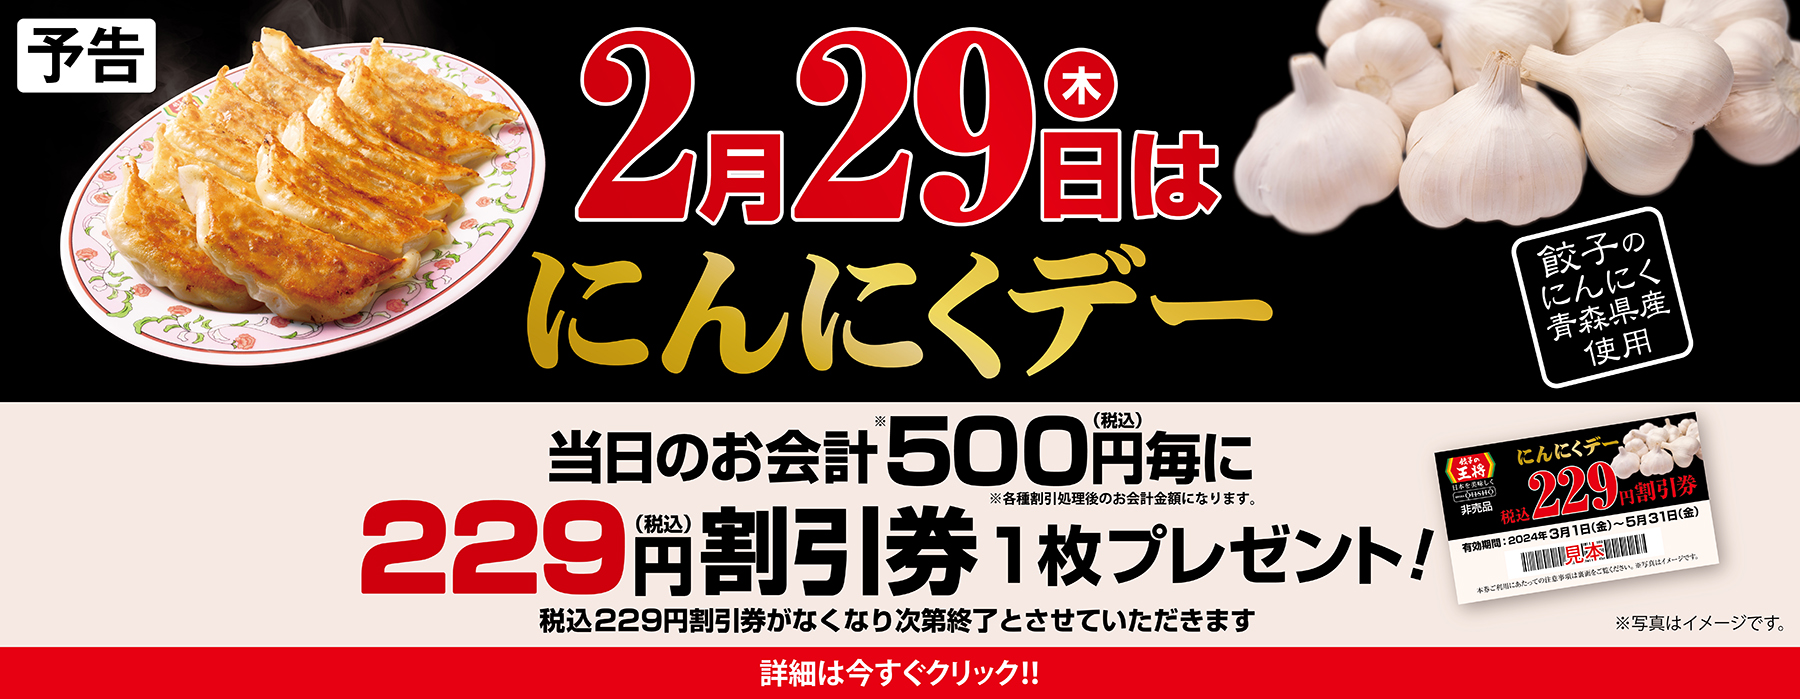 【2月29日】にんにくデー 税込229円割引券プレゼント!!